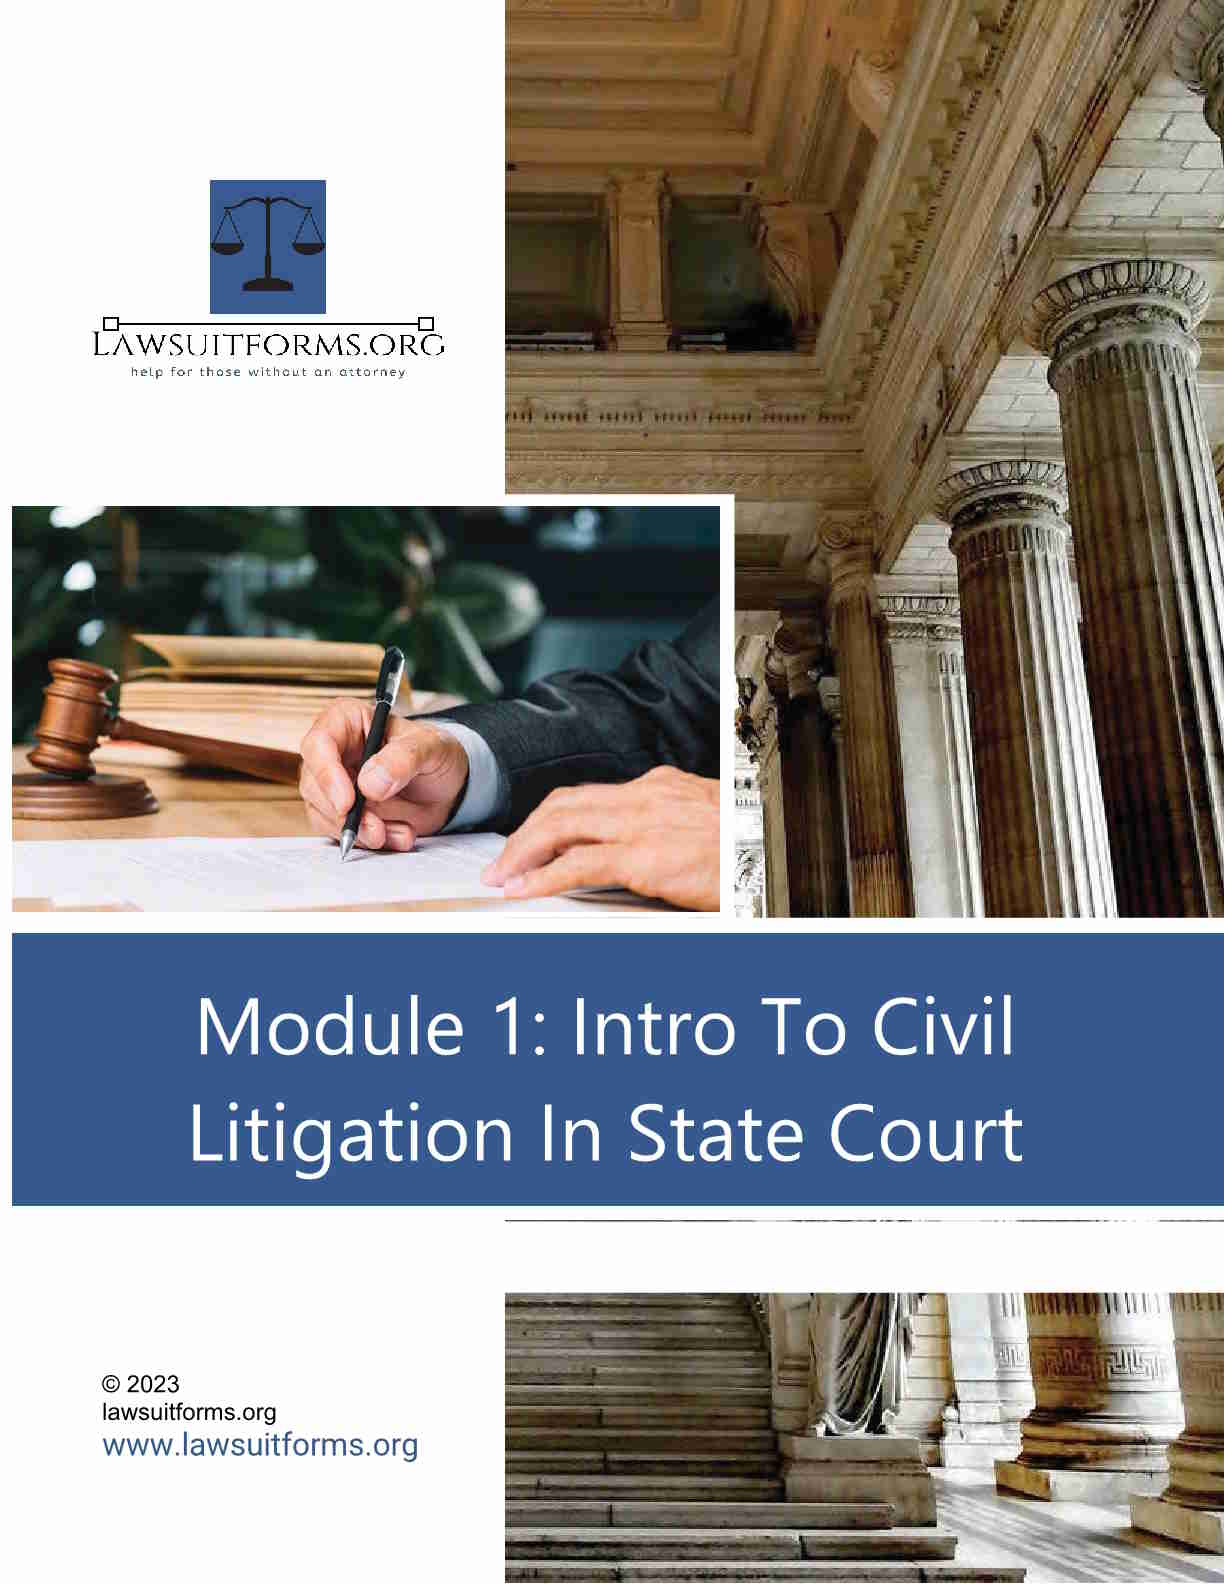 Intro to civil litigation